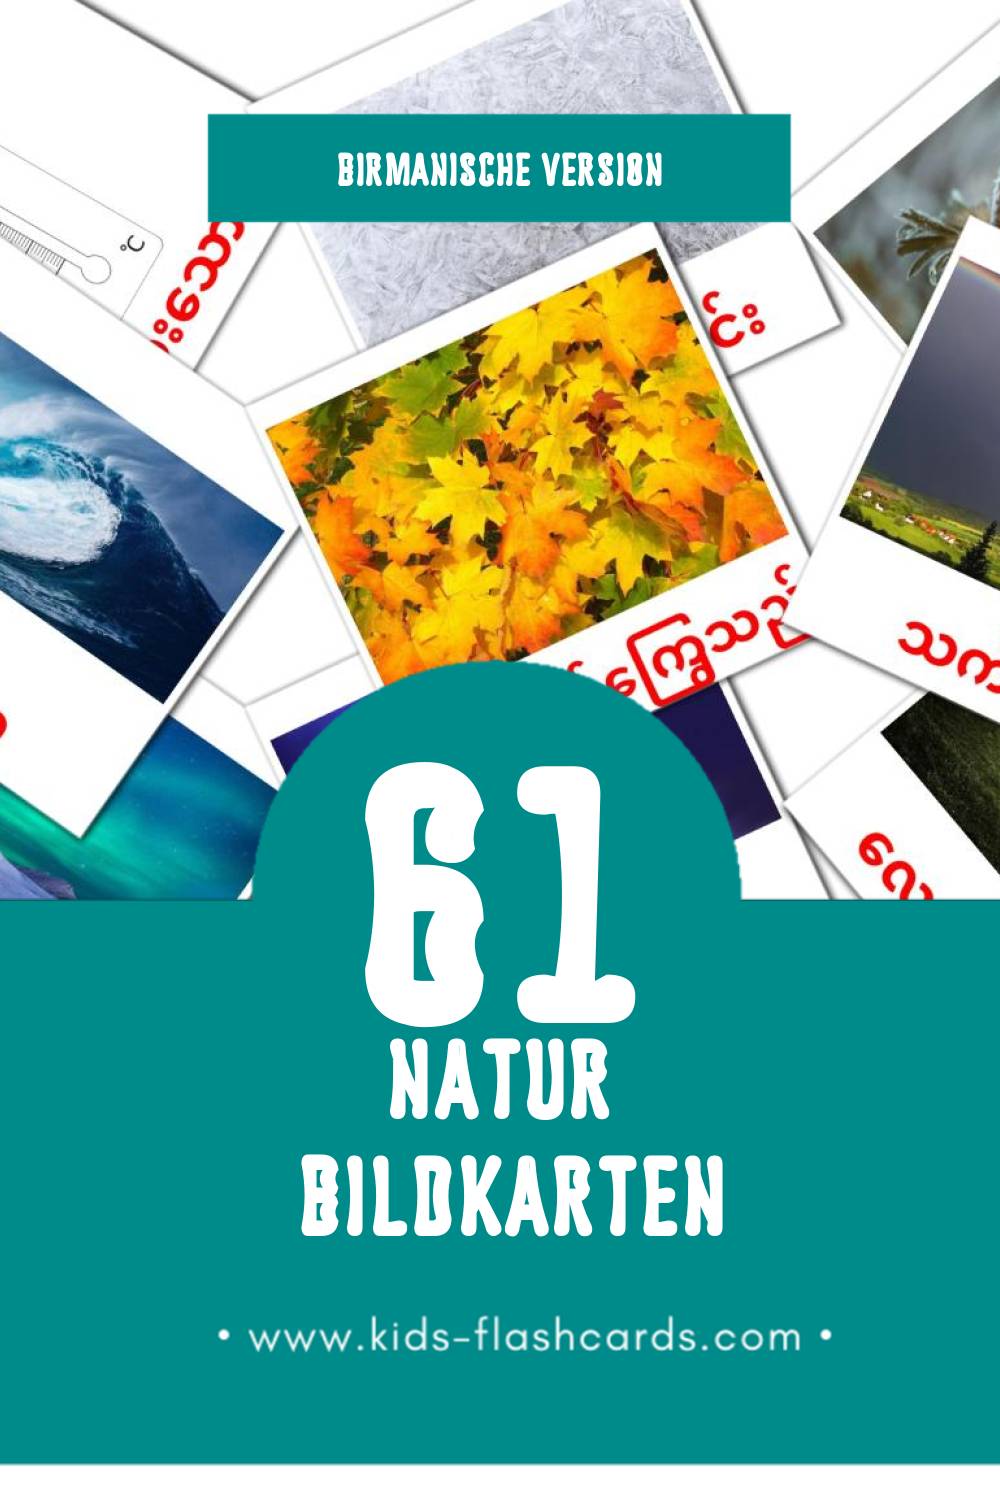 Visual သဘာဝ Flashcards für Kleinkinder (61 Karten in Birmanisch)